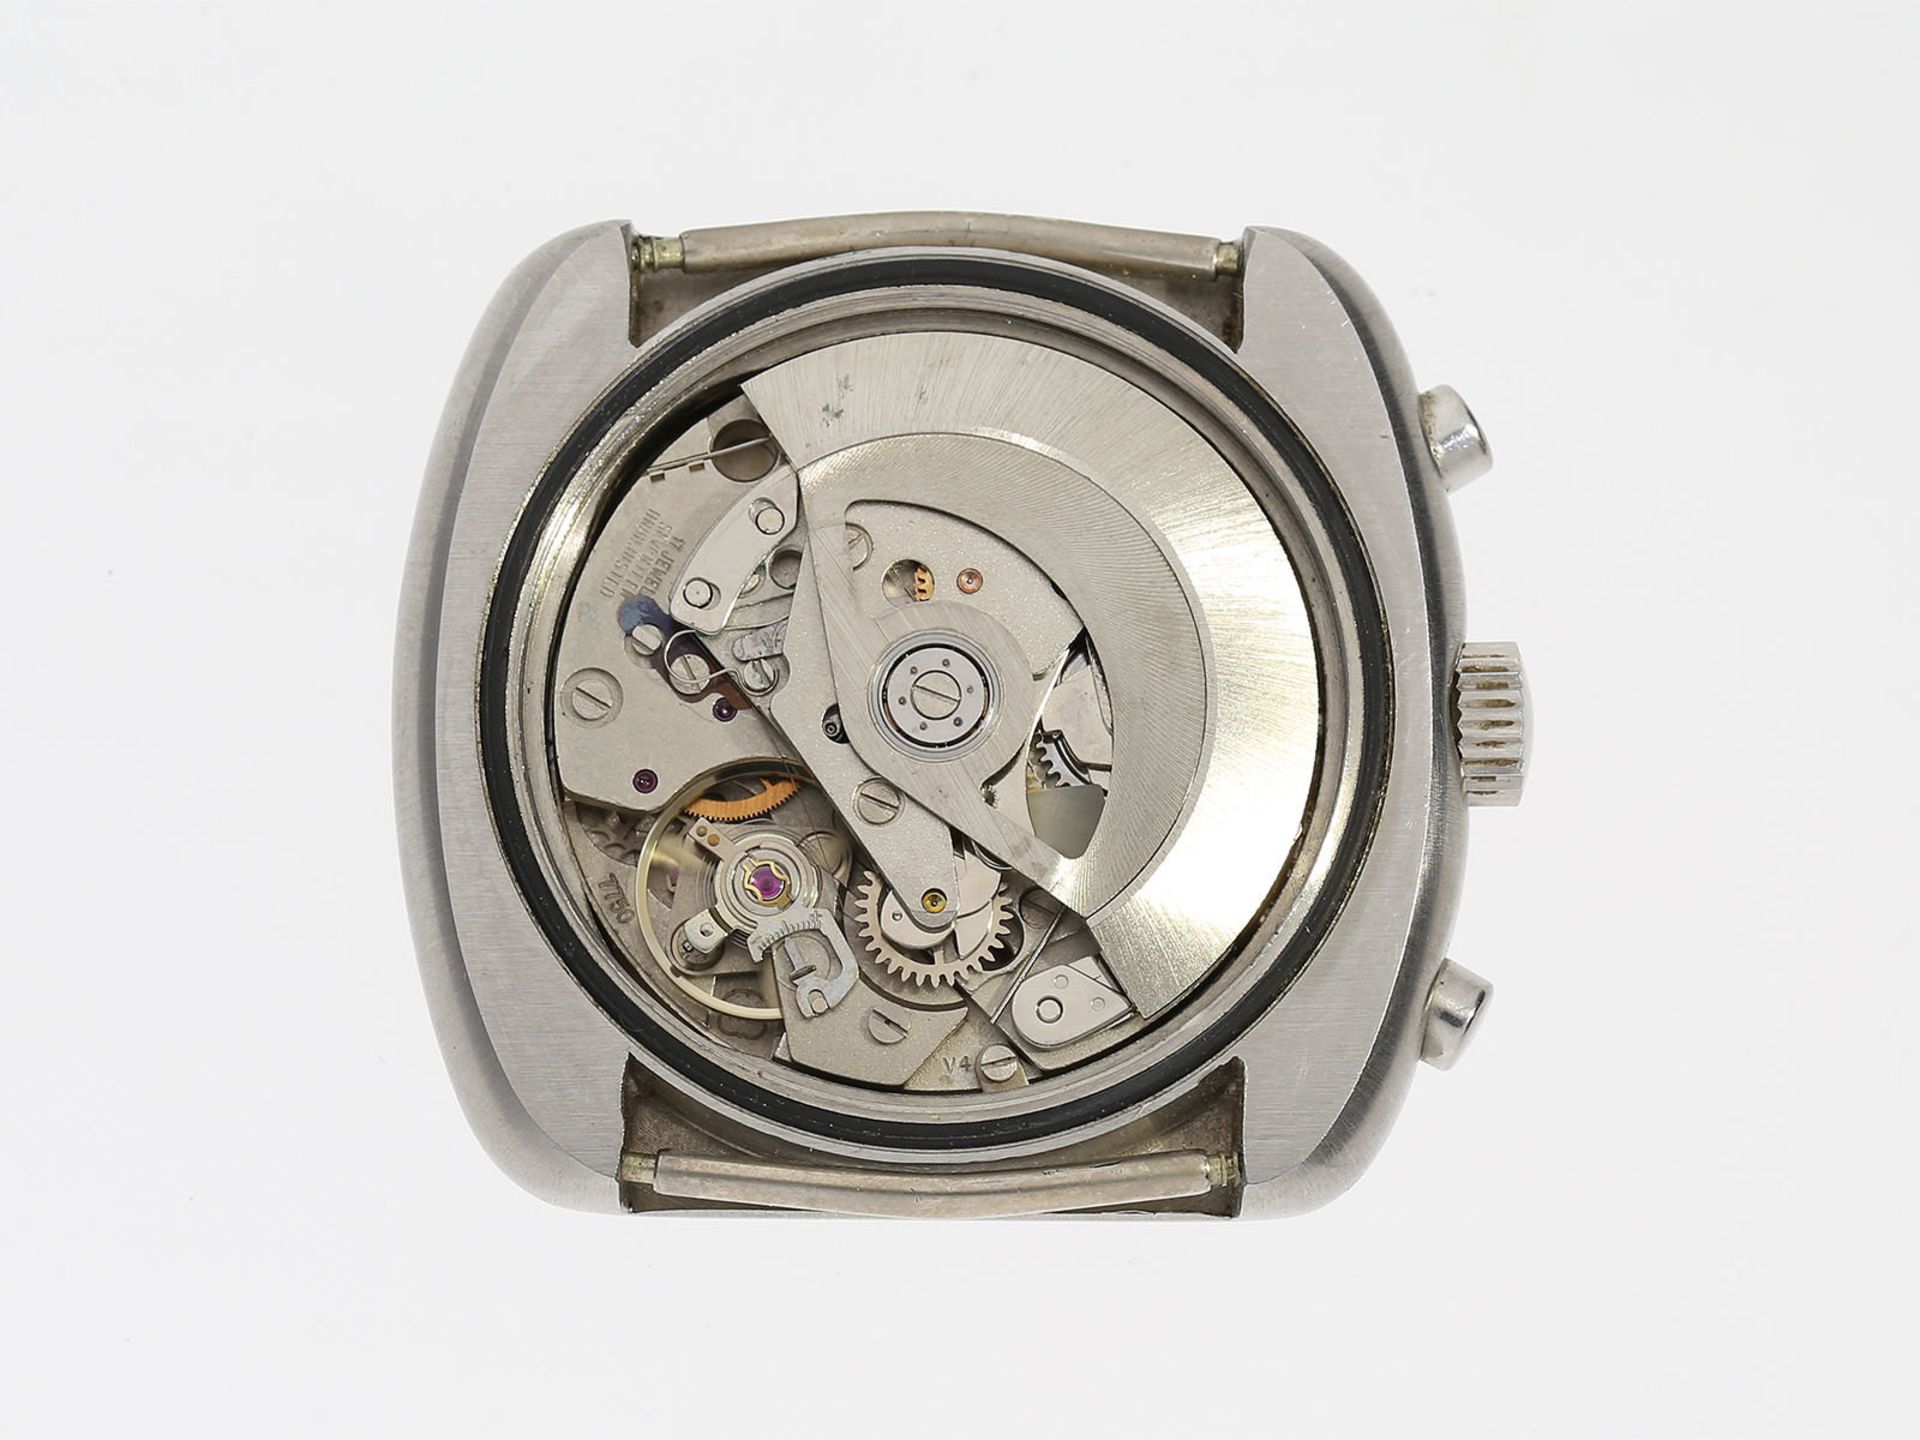 Armbanduhr: ausgefallener Edelstahl-Chronograph der Marke Revue, Automatik, ca. 1970Ca. 39x42mm, - Bild 3 aus 3